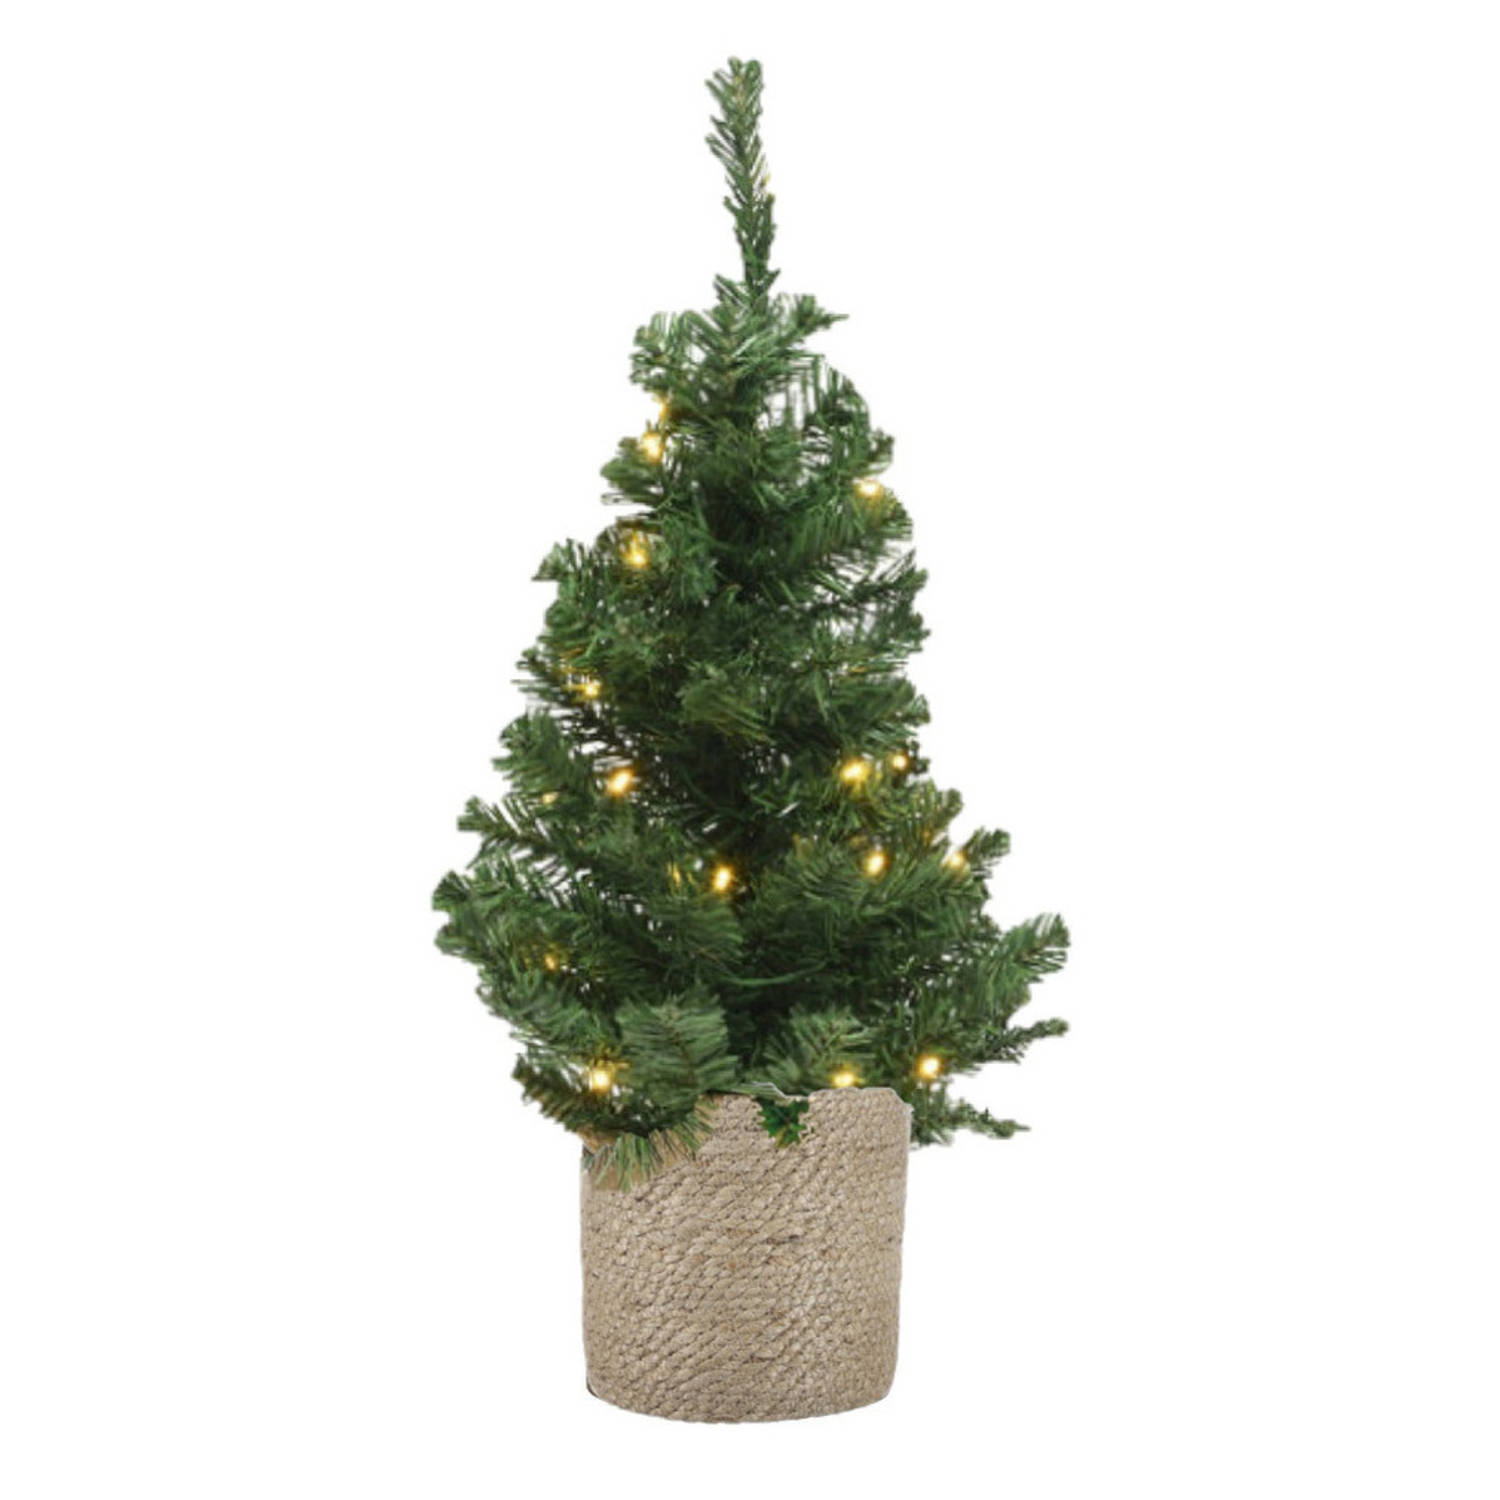 Kunstboom-kunst kerstboom groen 60 cm met verlichting en naturel jute pot Kunstkerstboom